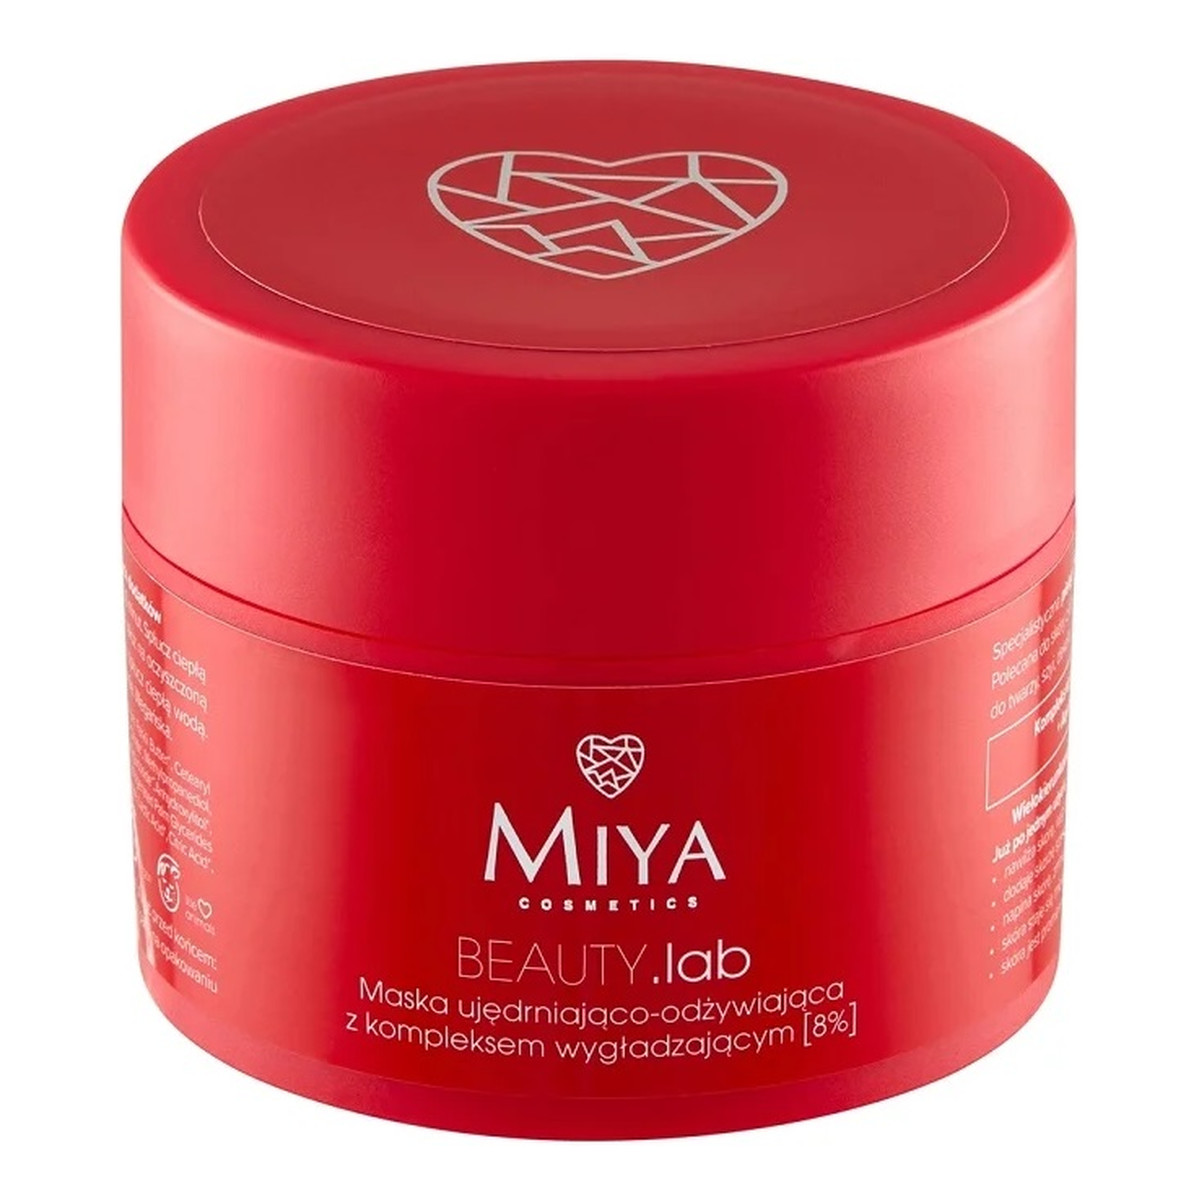 Miya Cosmetics Beauty.lab maska ujędrniająco-odżywiająca z kompleksem wygładzającym 8% 50ml